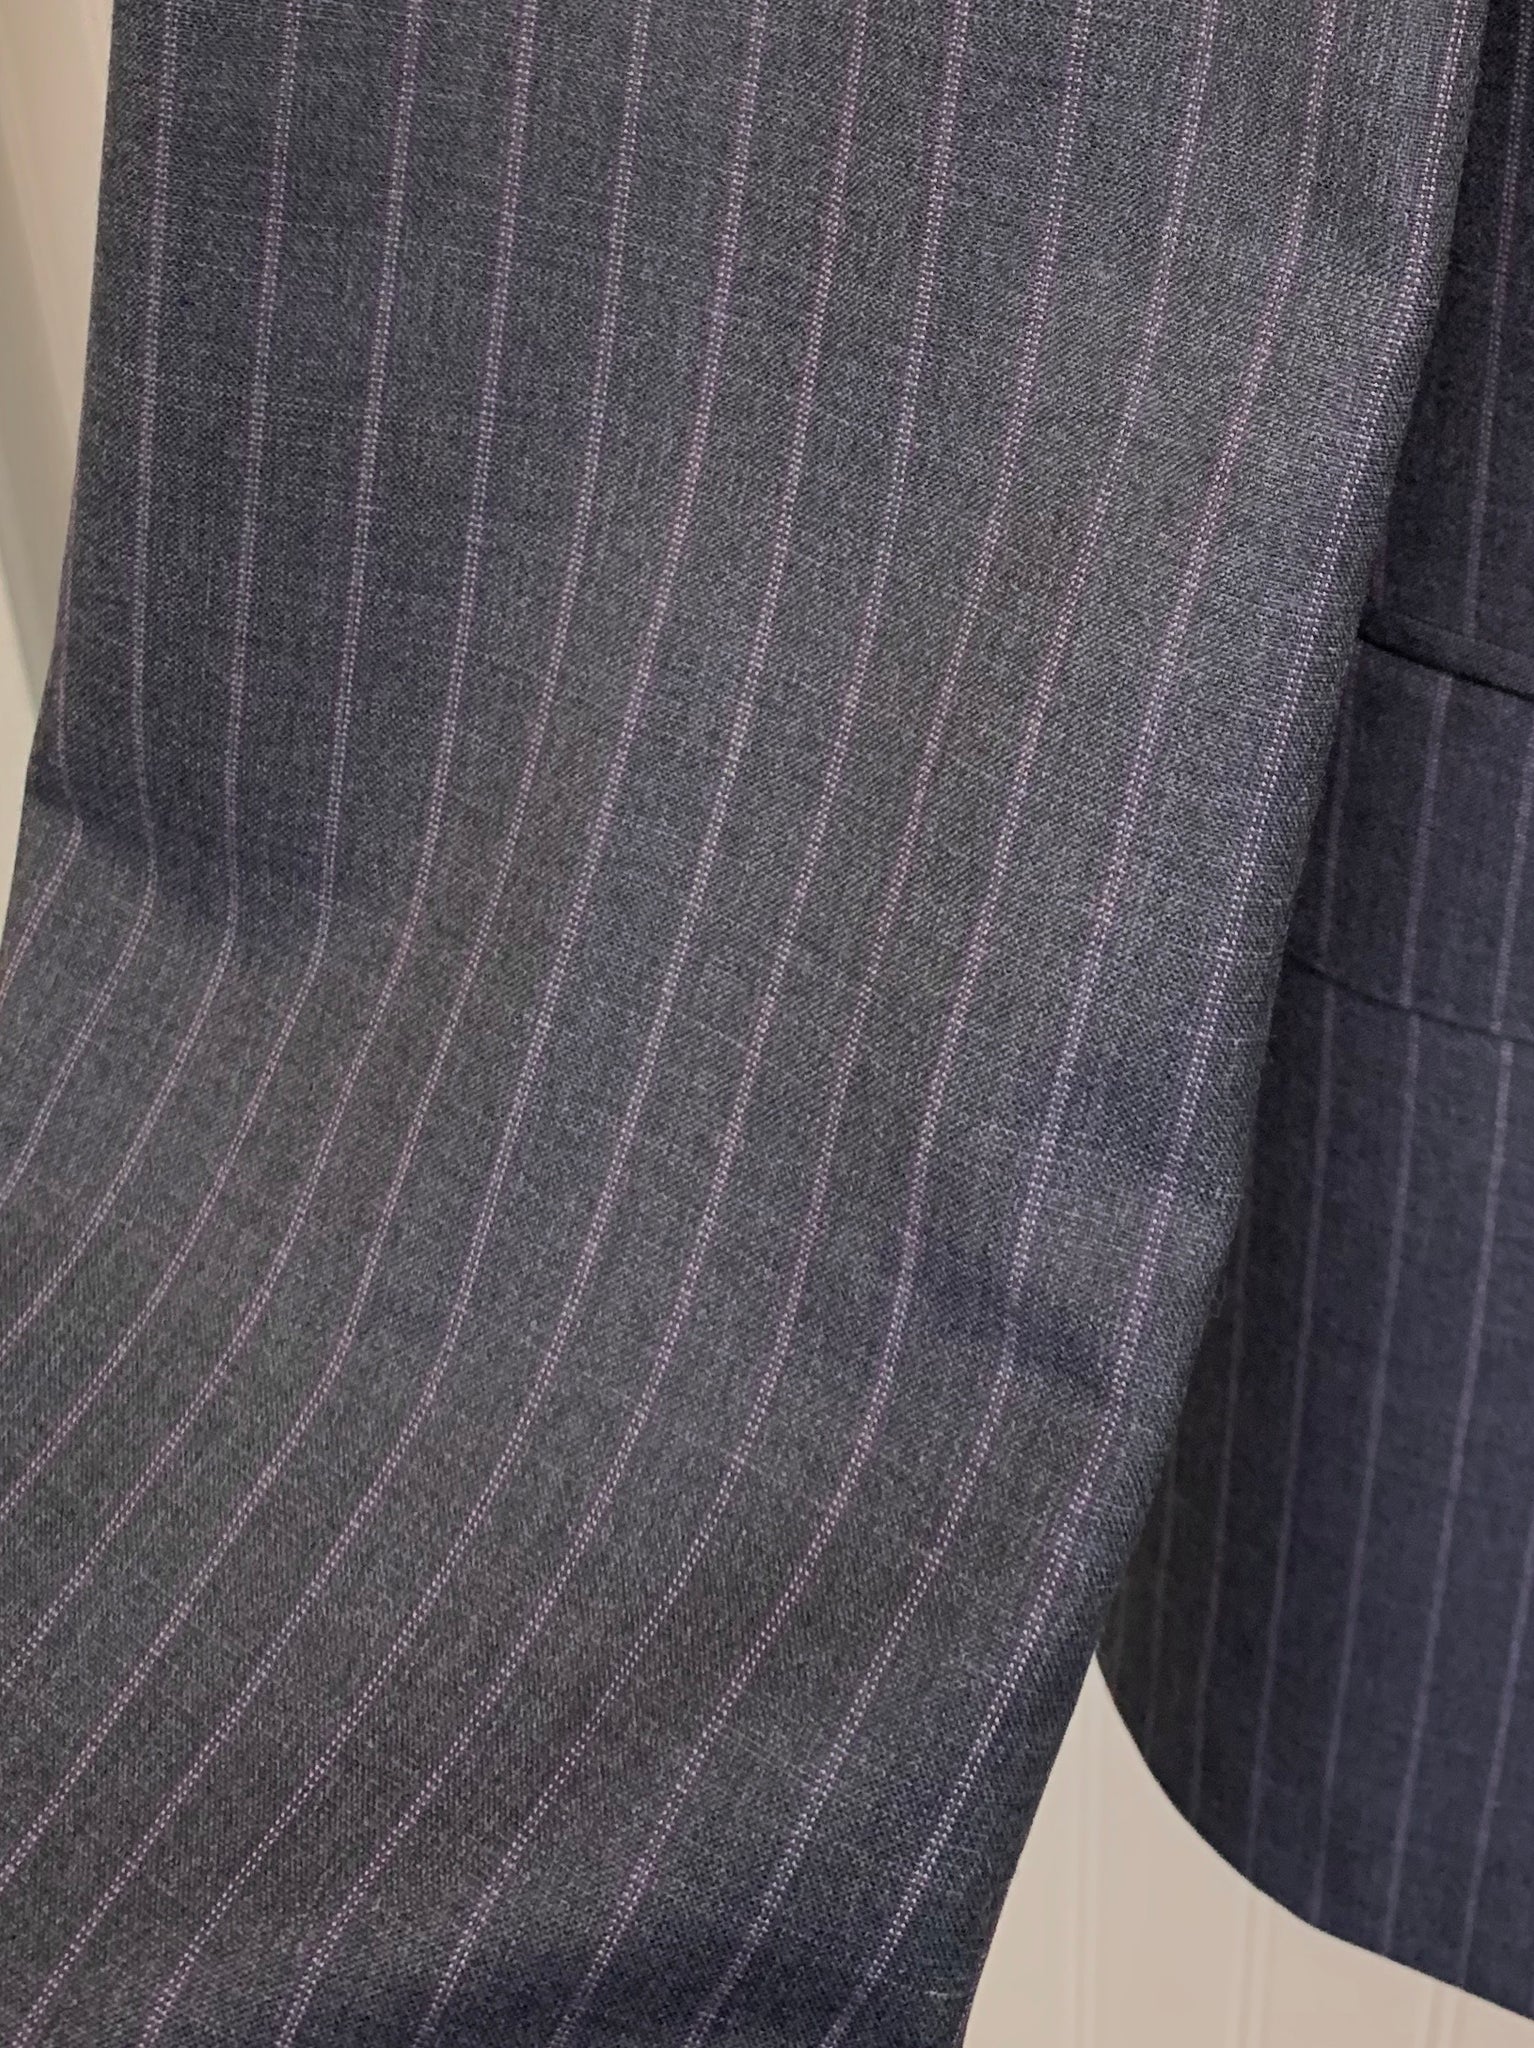 Michael Kors CLOSEOUT! Men's Classic-Fit Light Blue Pinstripe Suit